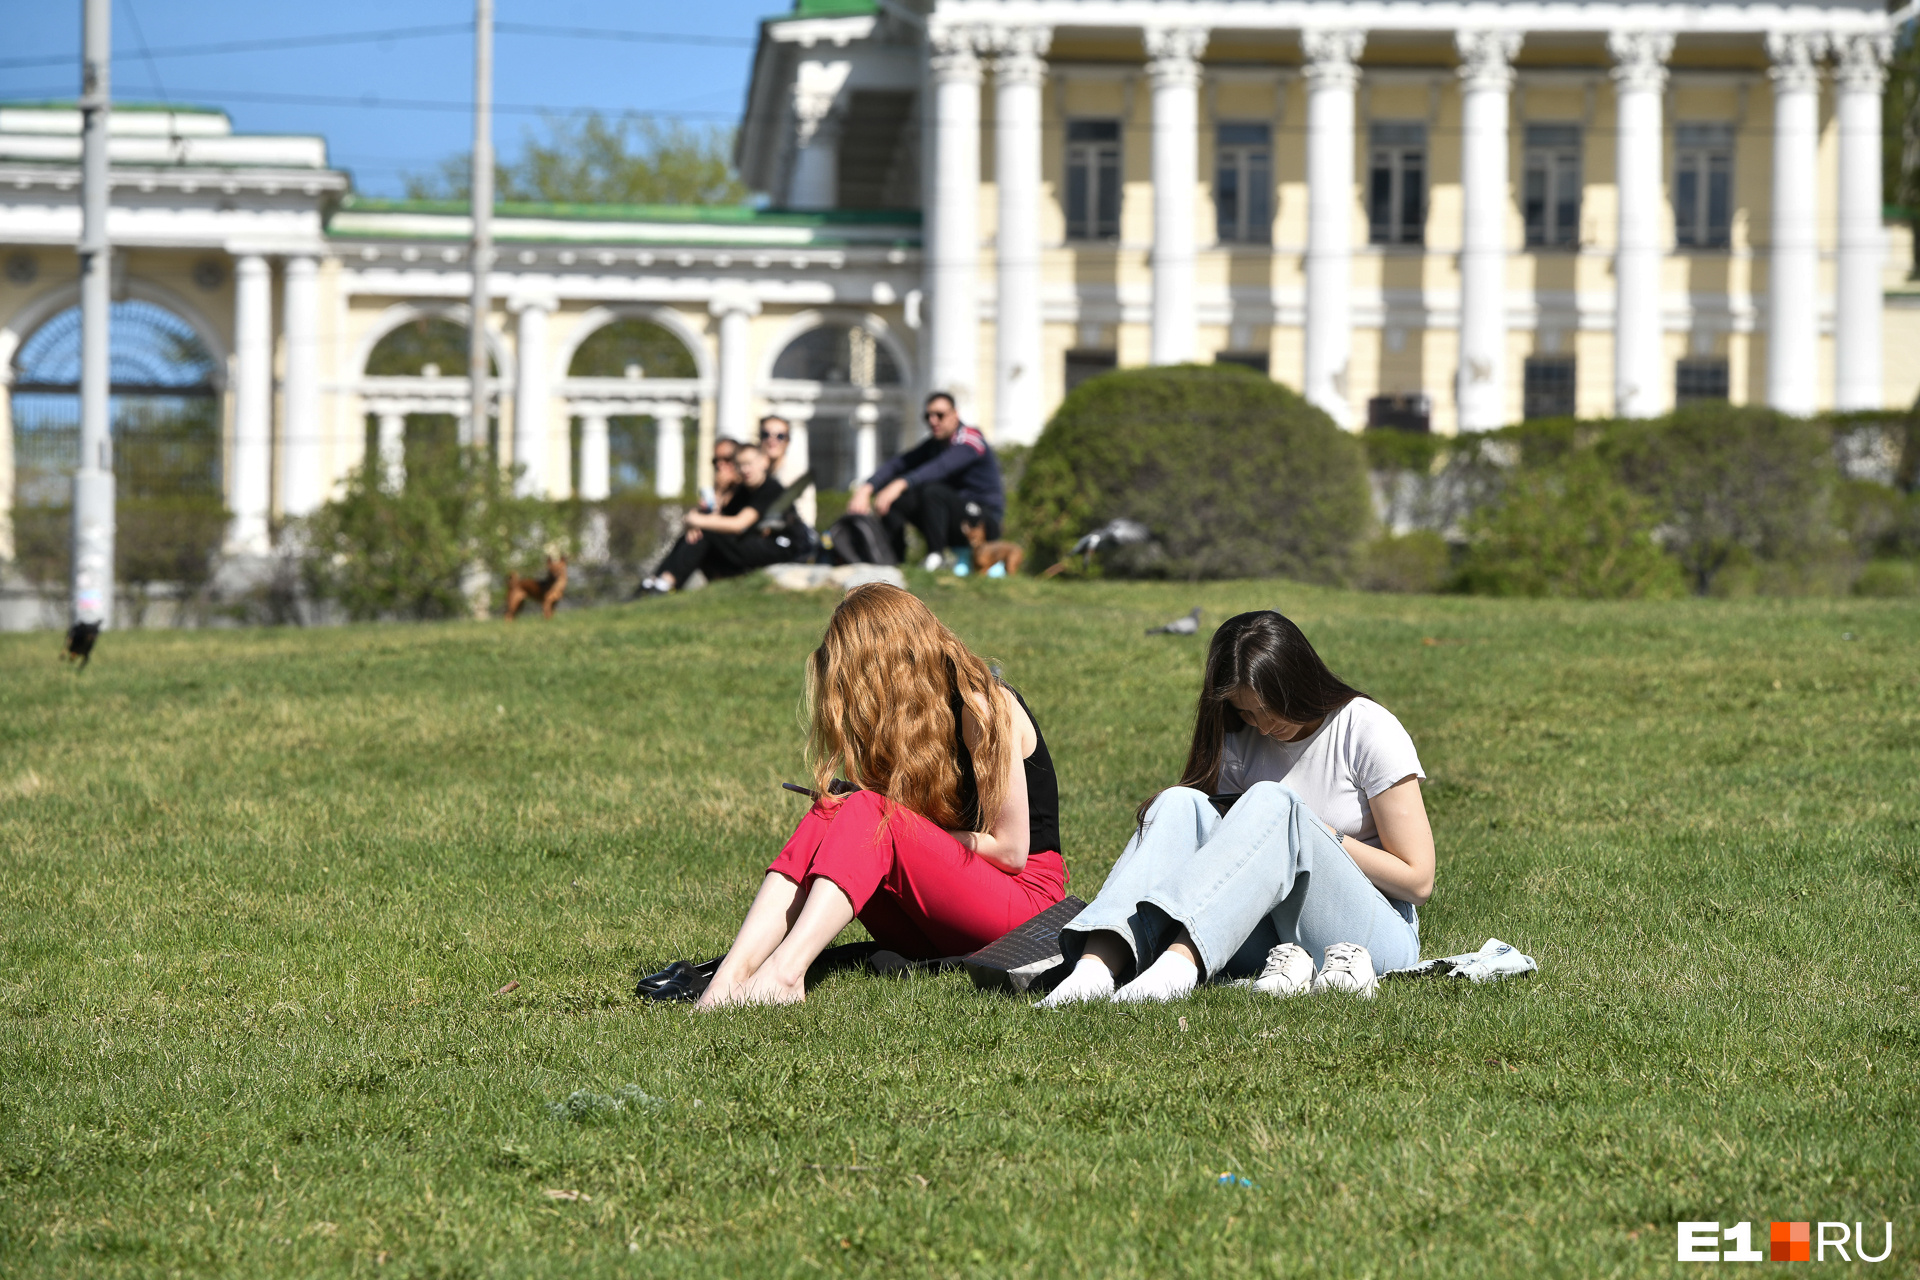 Антициклон украдет тепло. Прогноз погоды на май 2023 года в Екатеринбурге